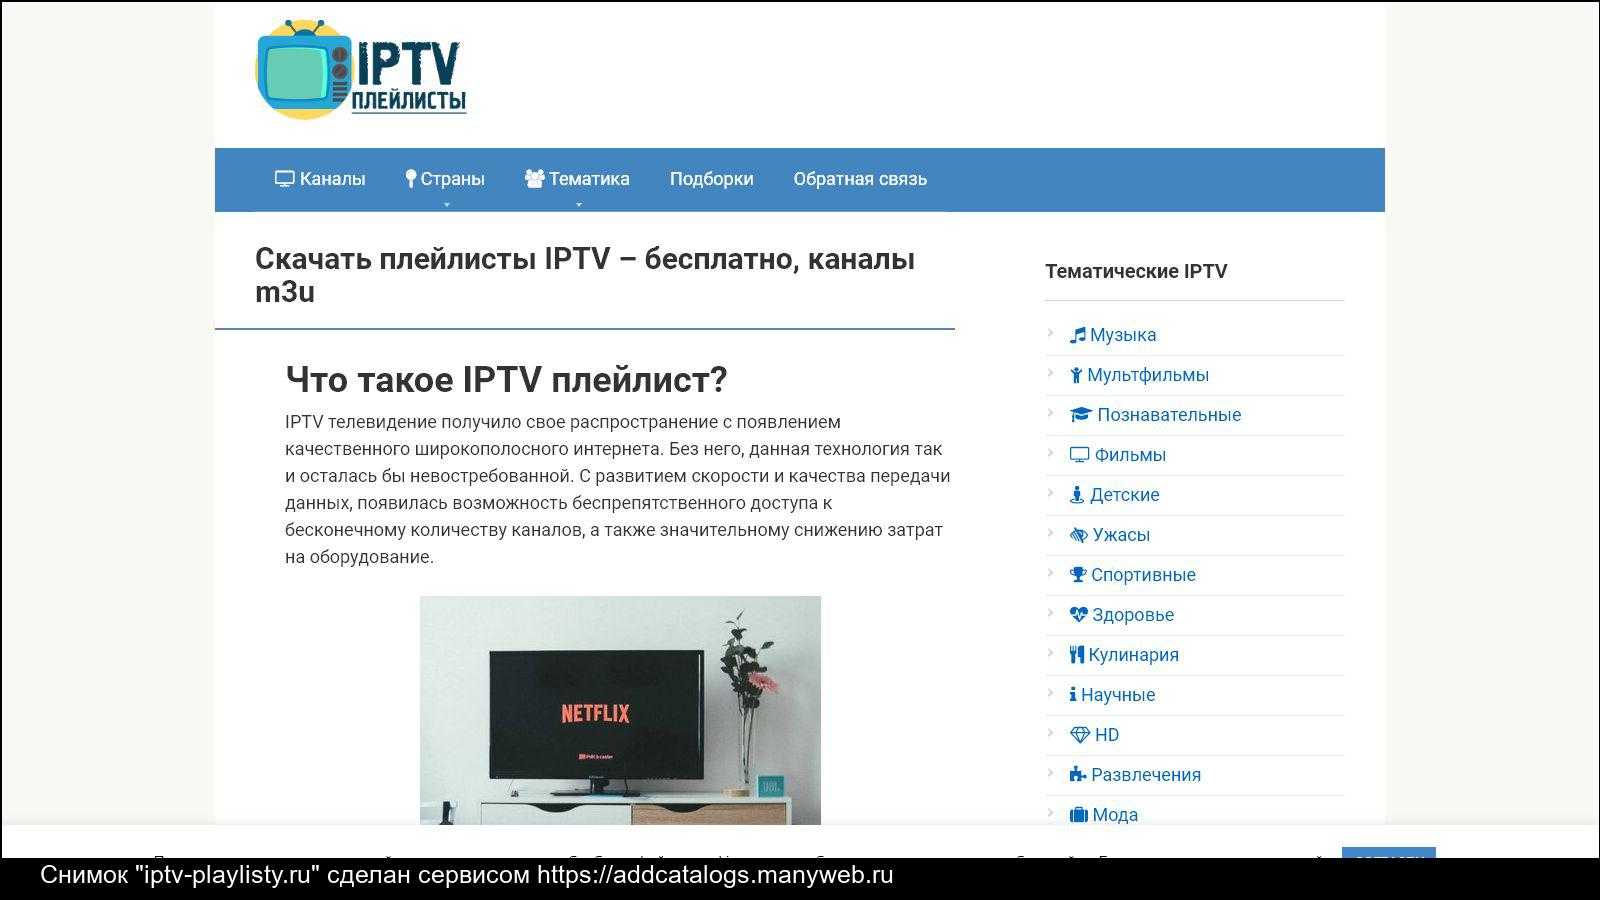 Список бесплатных каналов iptv. IPTV плейлист. IPTV сервис.